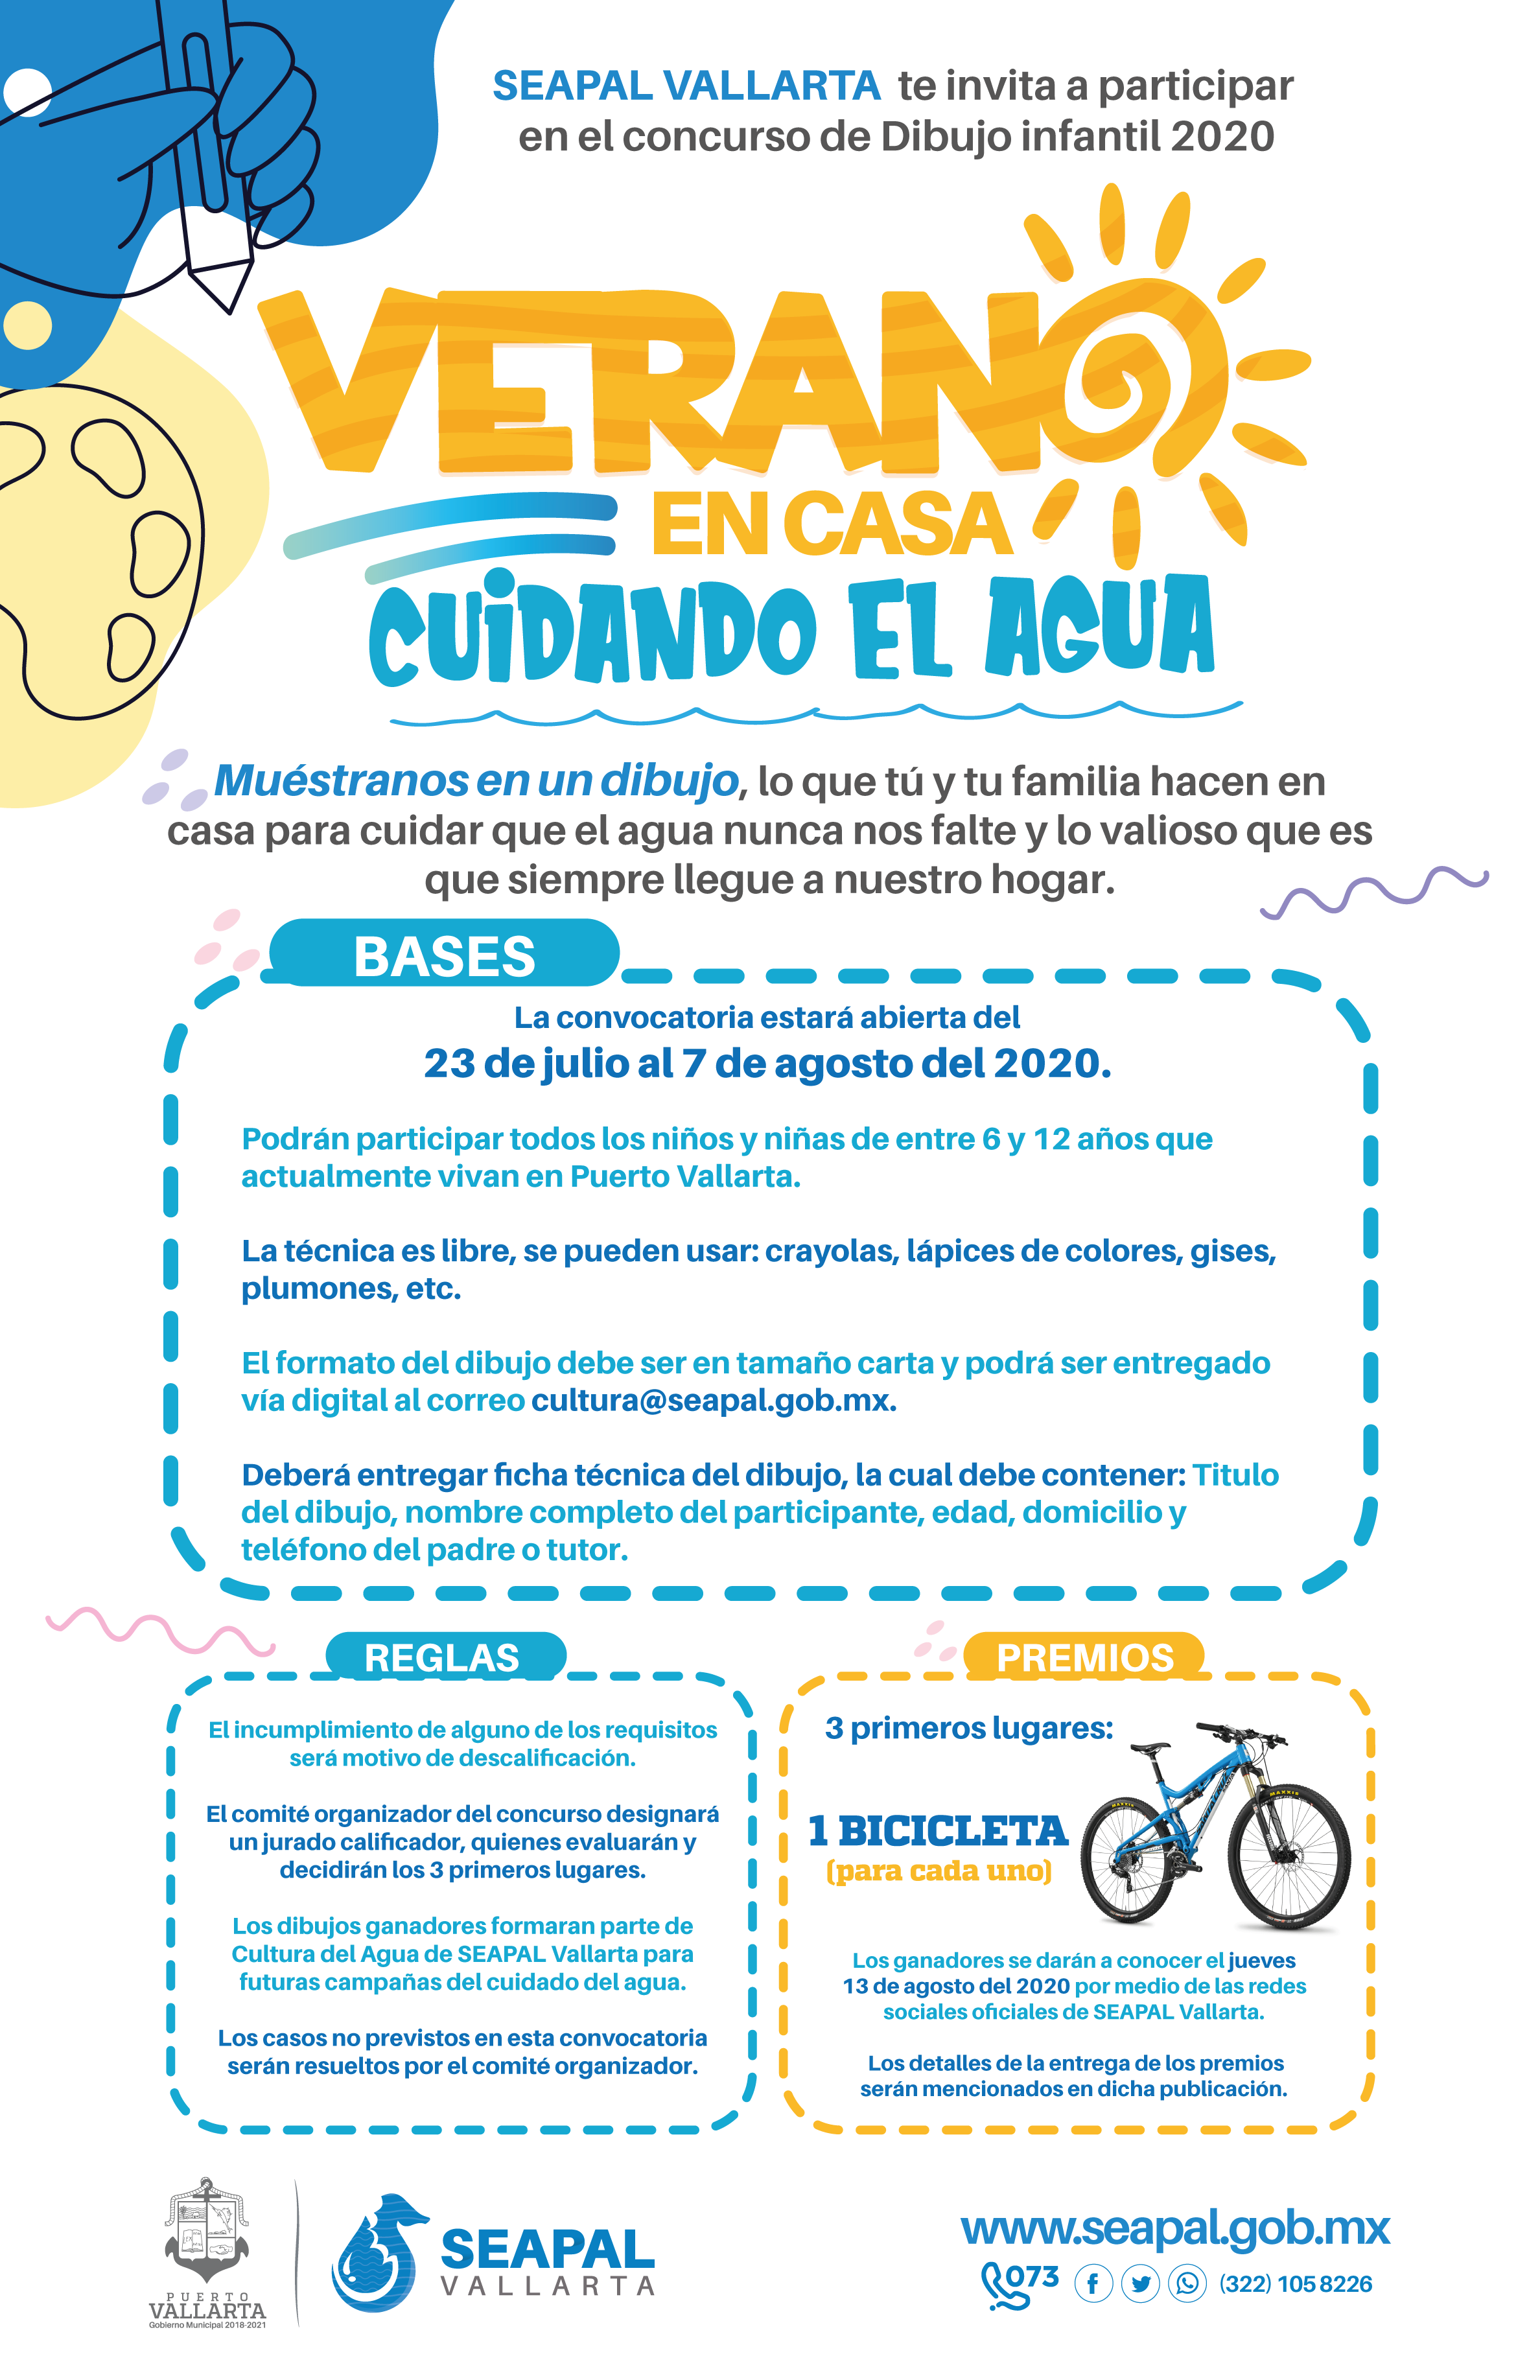 SEAPAL invita al concurso de dibujo infantil “Verano en Casa, Cuidando el  Agua” - SEAPAL Puerto Vallarta